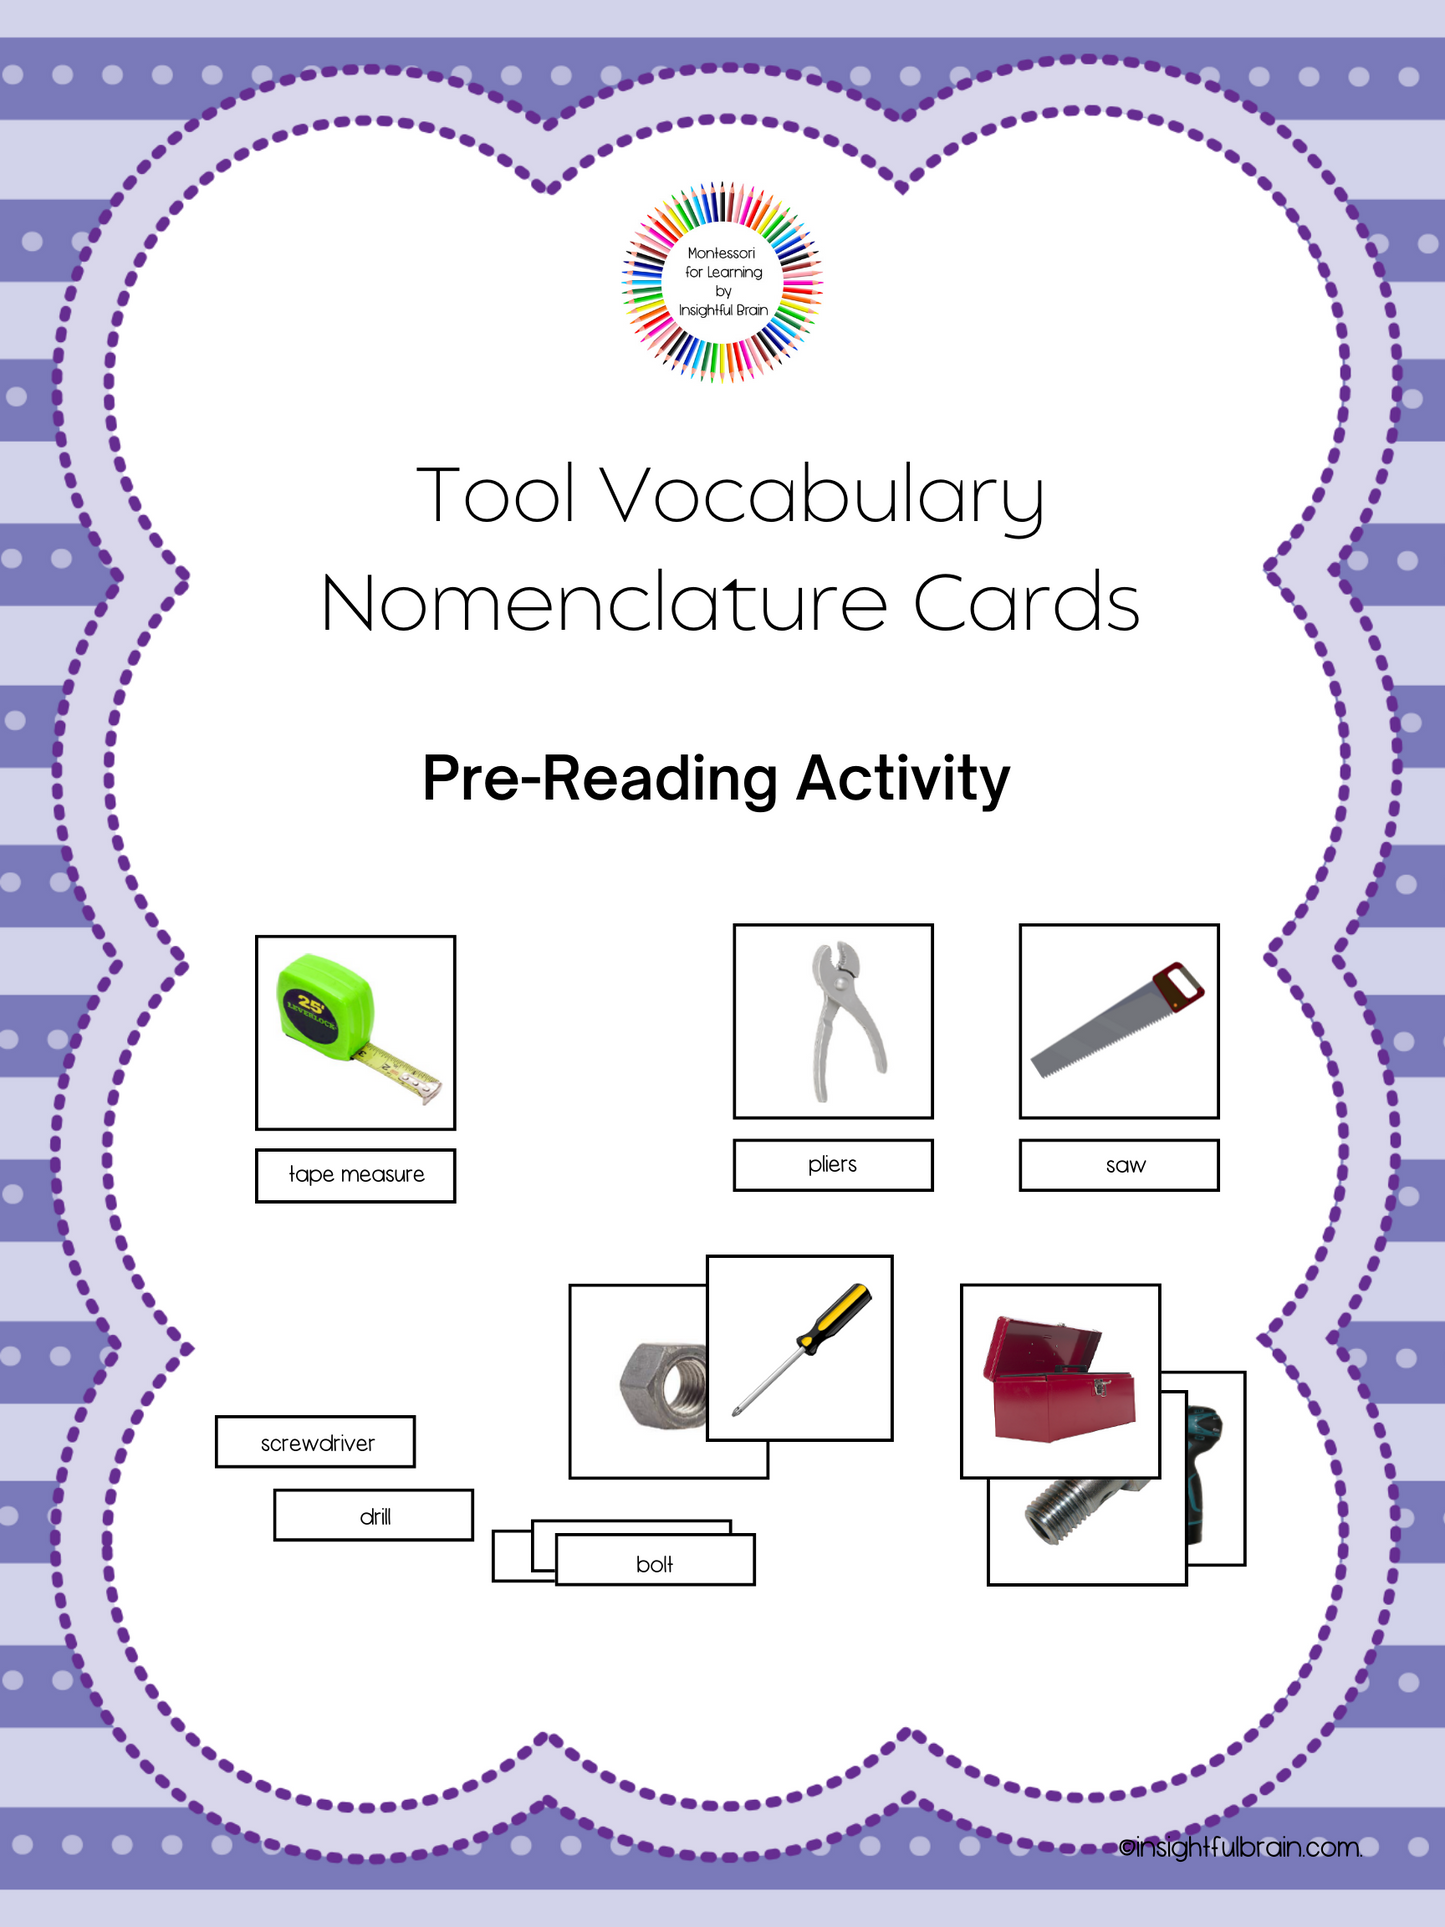 Tool Vocabulary Nomenclature Cards